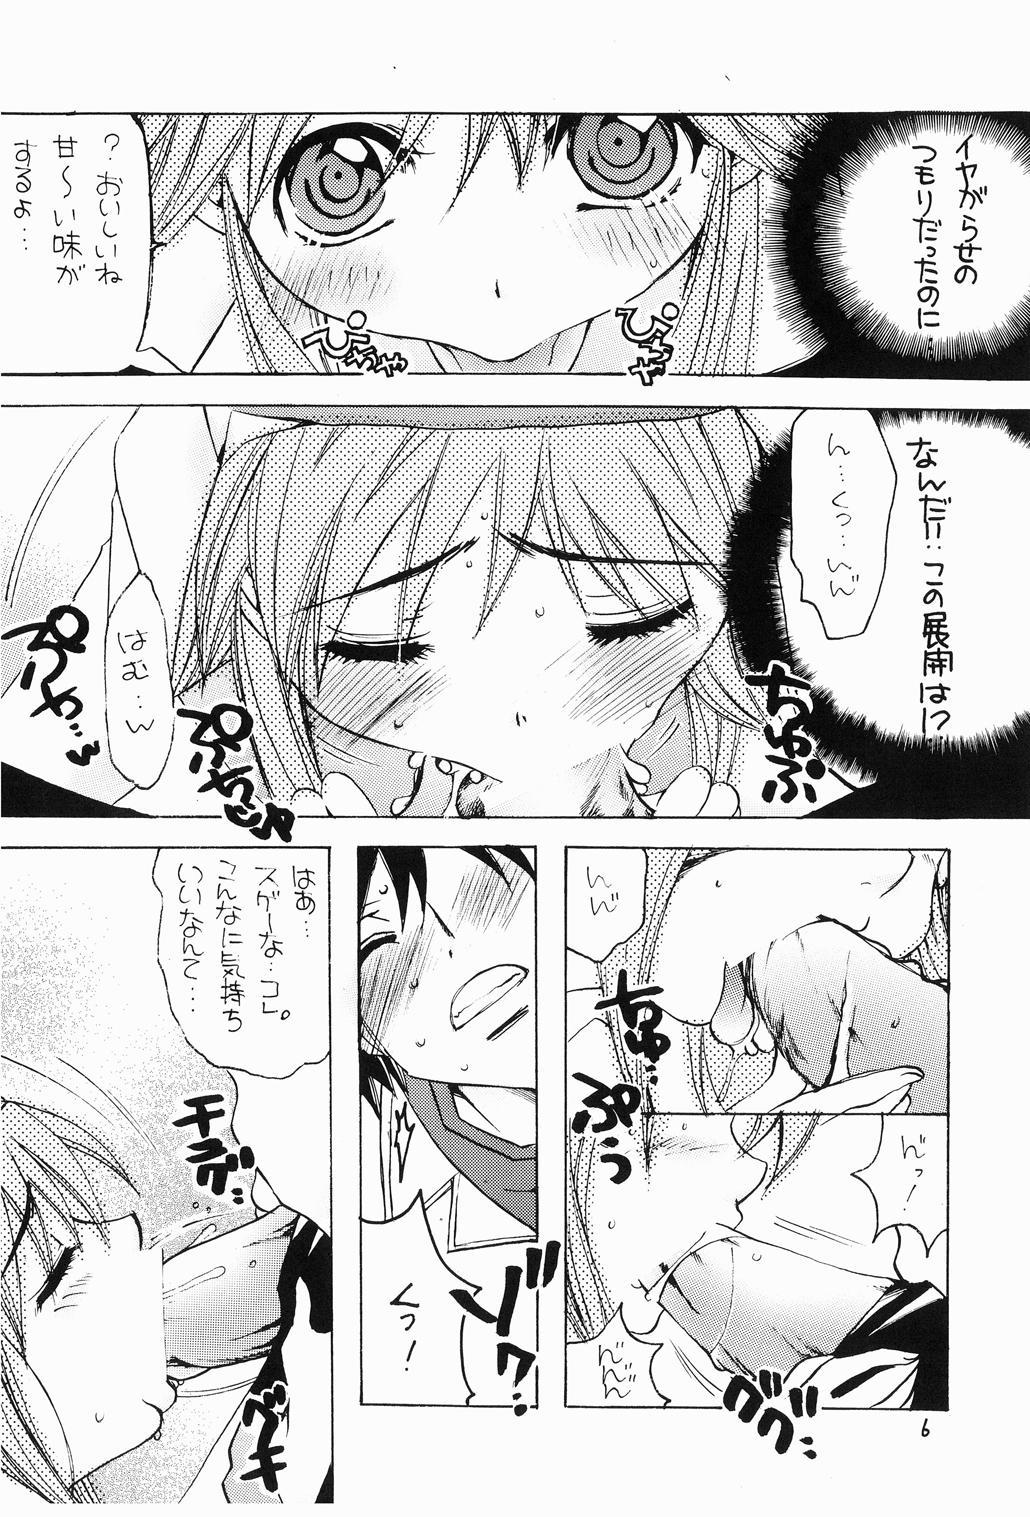 Namorada Momoiro Index - Toaru majutsu no index Deutsch - Page 5